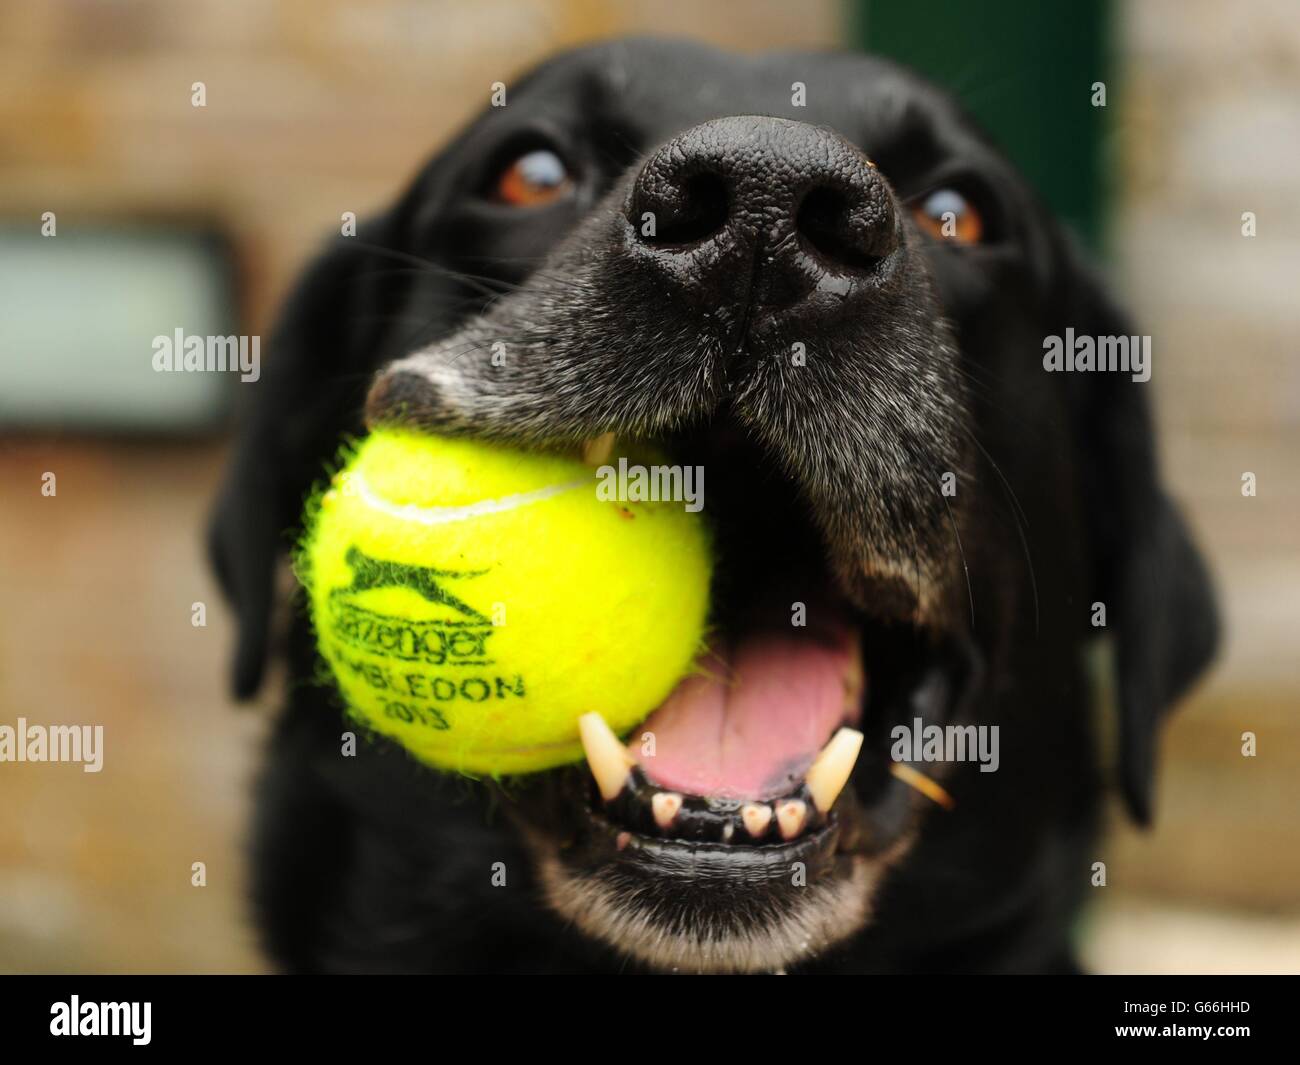 Sprengstoff und suchen Hund Dylan mit einem Wimbledon Ball in seinem Mund vor am 9. Tag der Wimbledon Championships im All England Lawn Tennis und Croquet Club, Wimbledon. Stockfoto